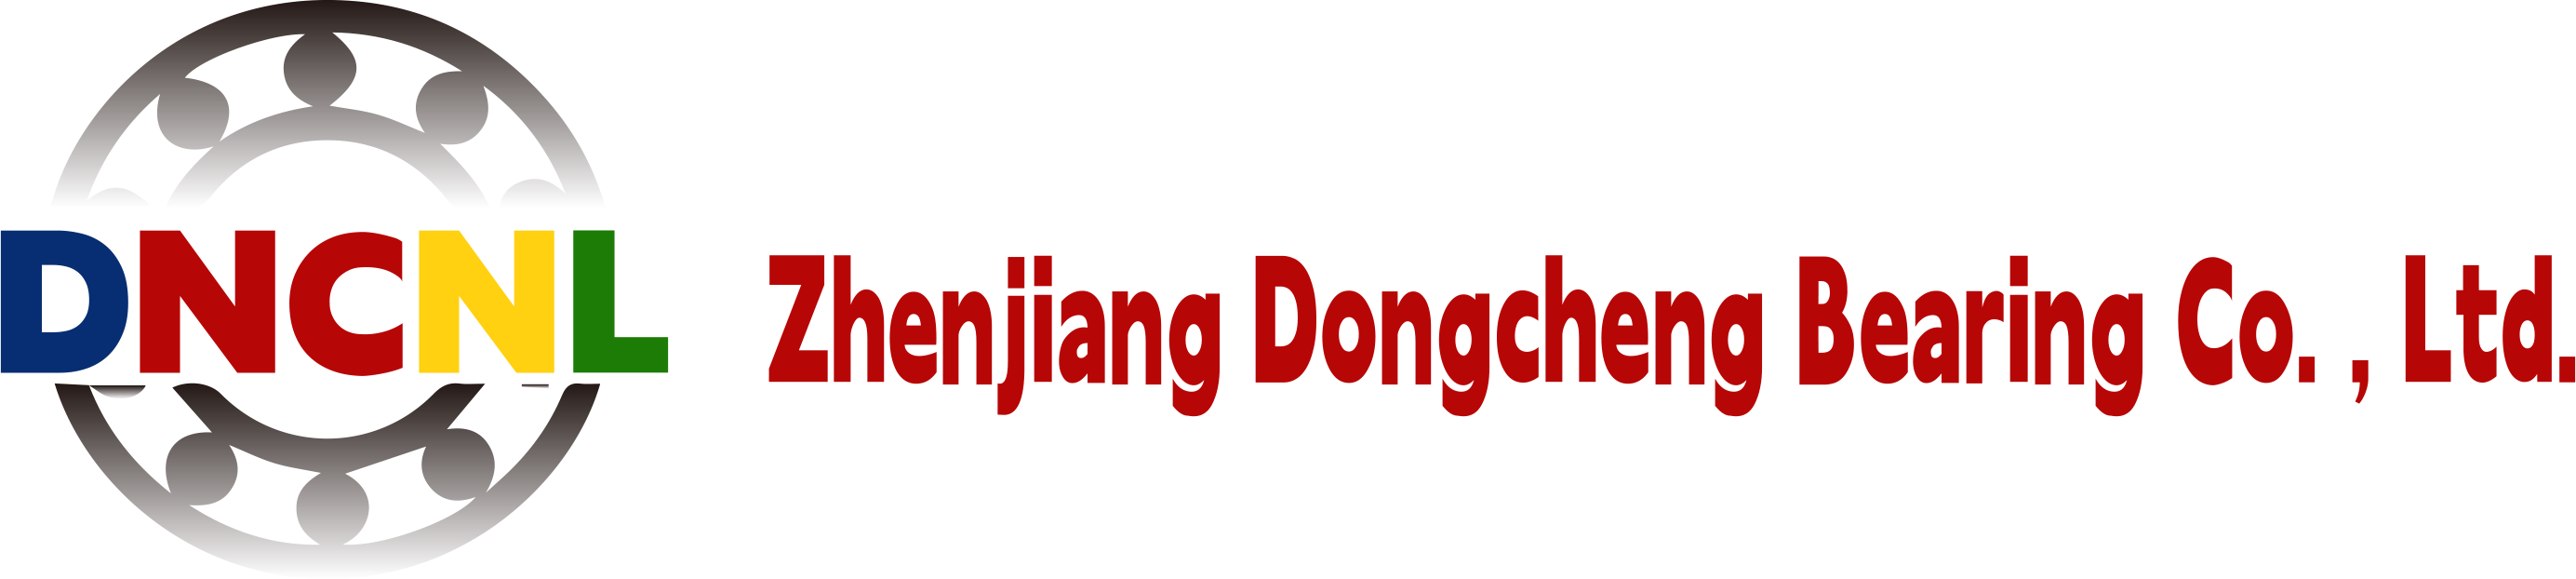 Rolamento Co. de Zhenjiang Dongcheng, Ltd.